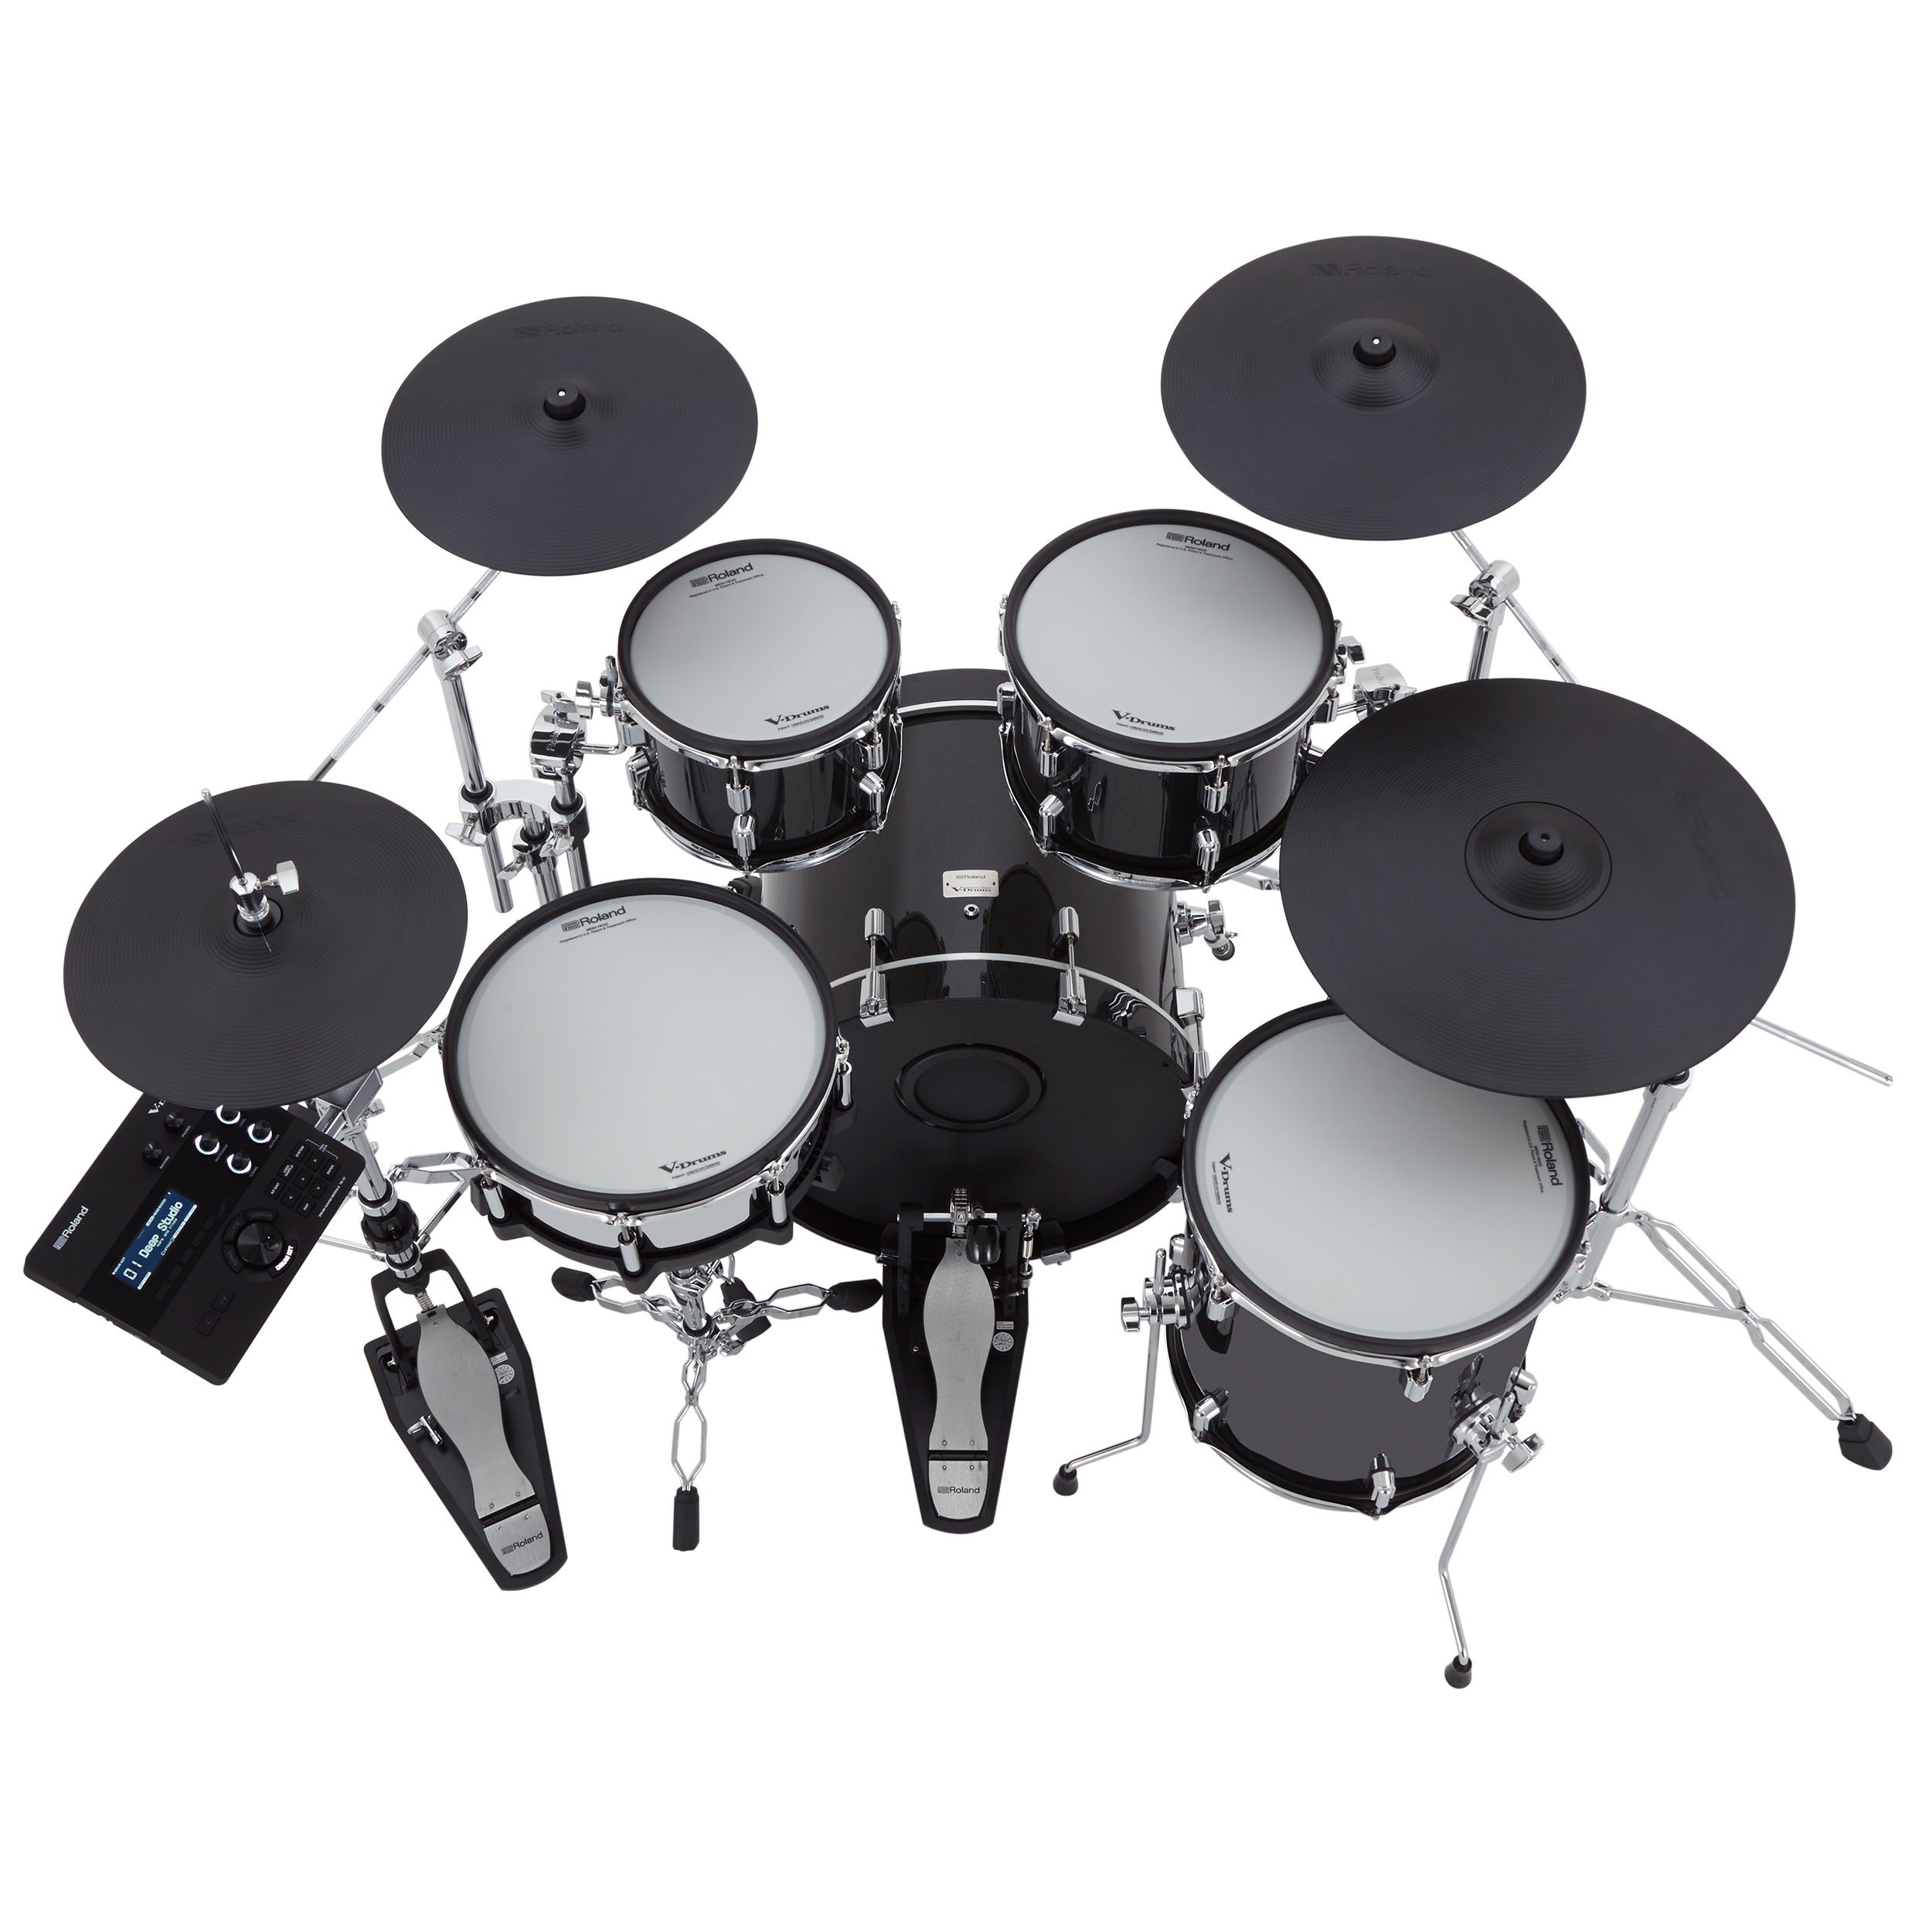 Roland Vad 507 V-drums Acoustic Design 5 Futs - Batería electrónica completa - Variation 3